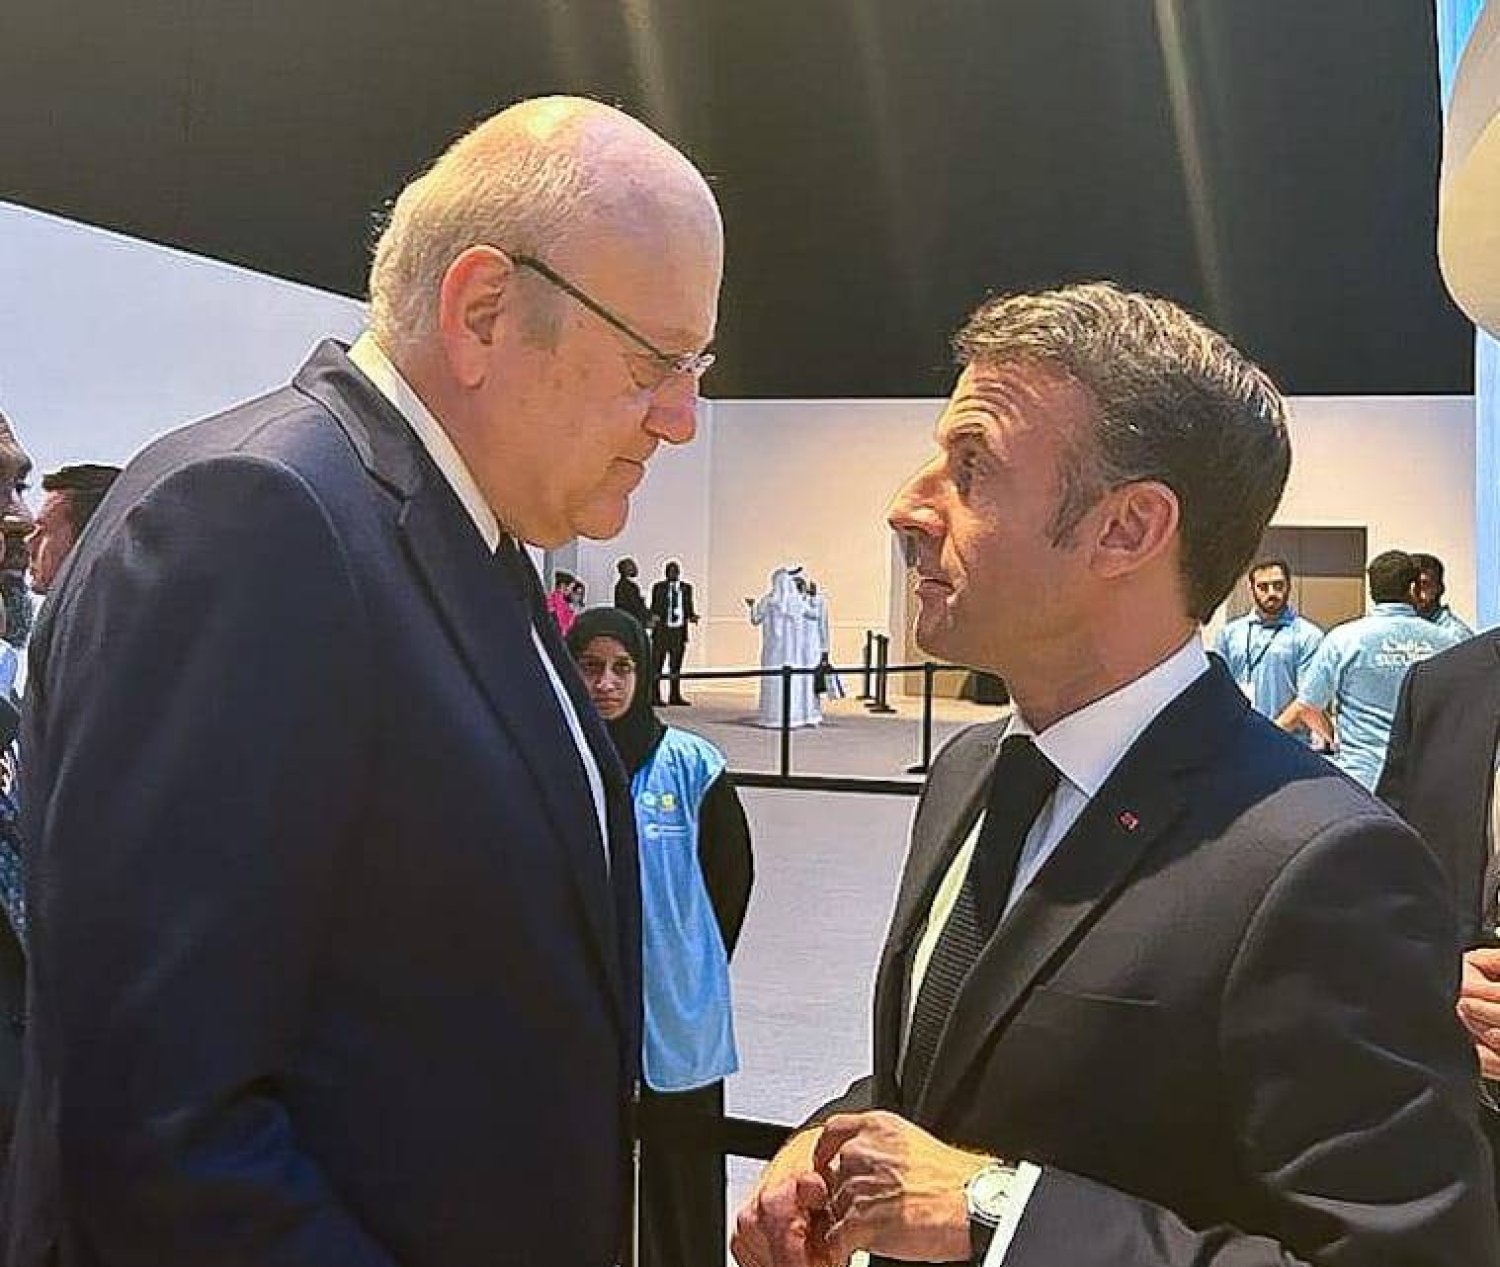 من لقاء سابق بين الرئيس الفرنسي إيمانويل ماكرون ورئيس الوزراء اللبناني نجيب ميقاتي (رئاسة الحكومة اللبنانية)